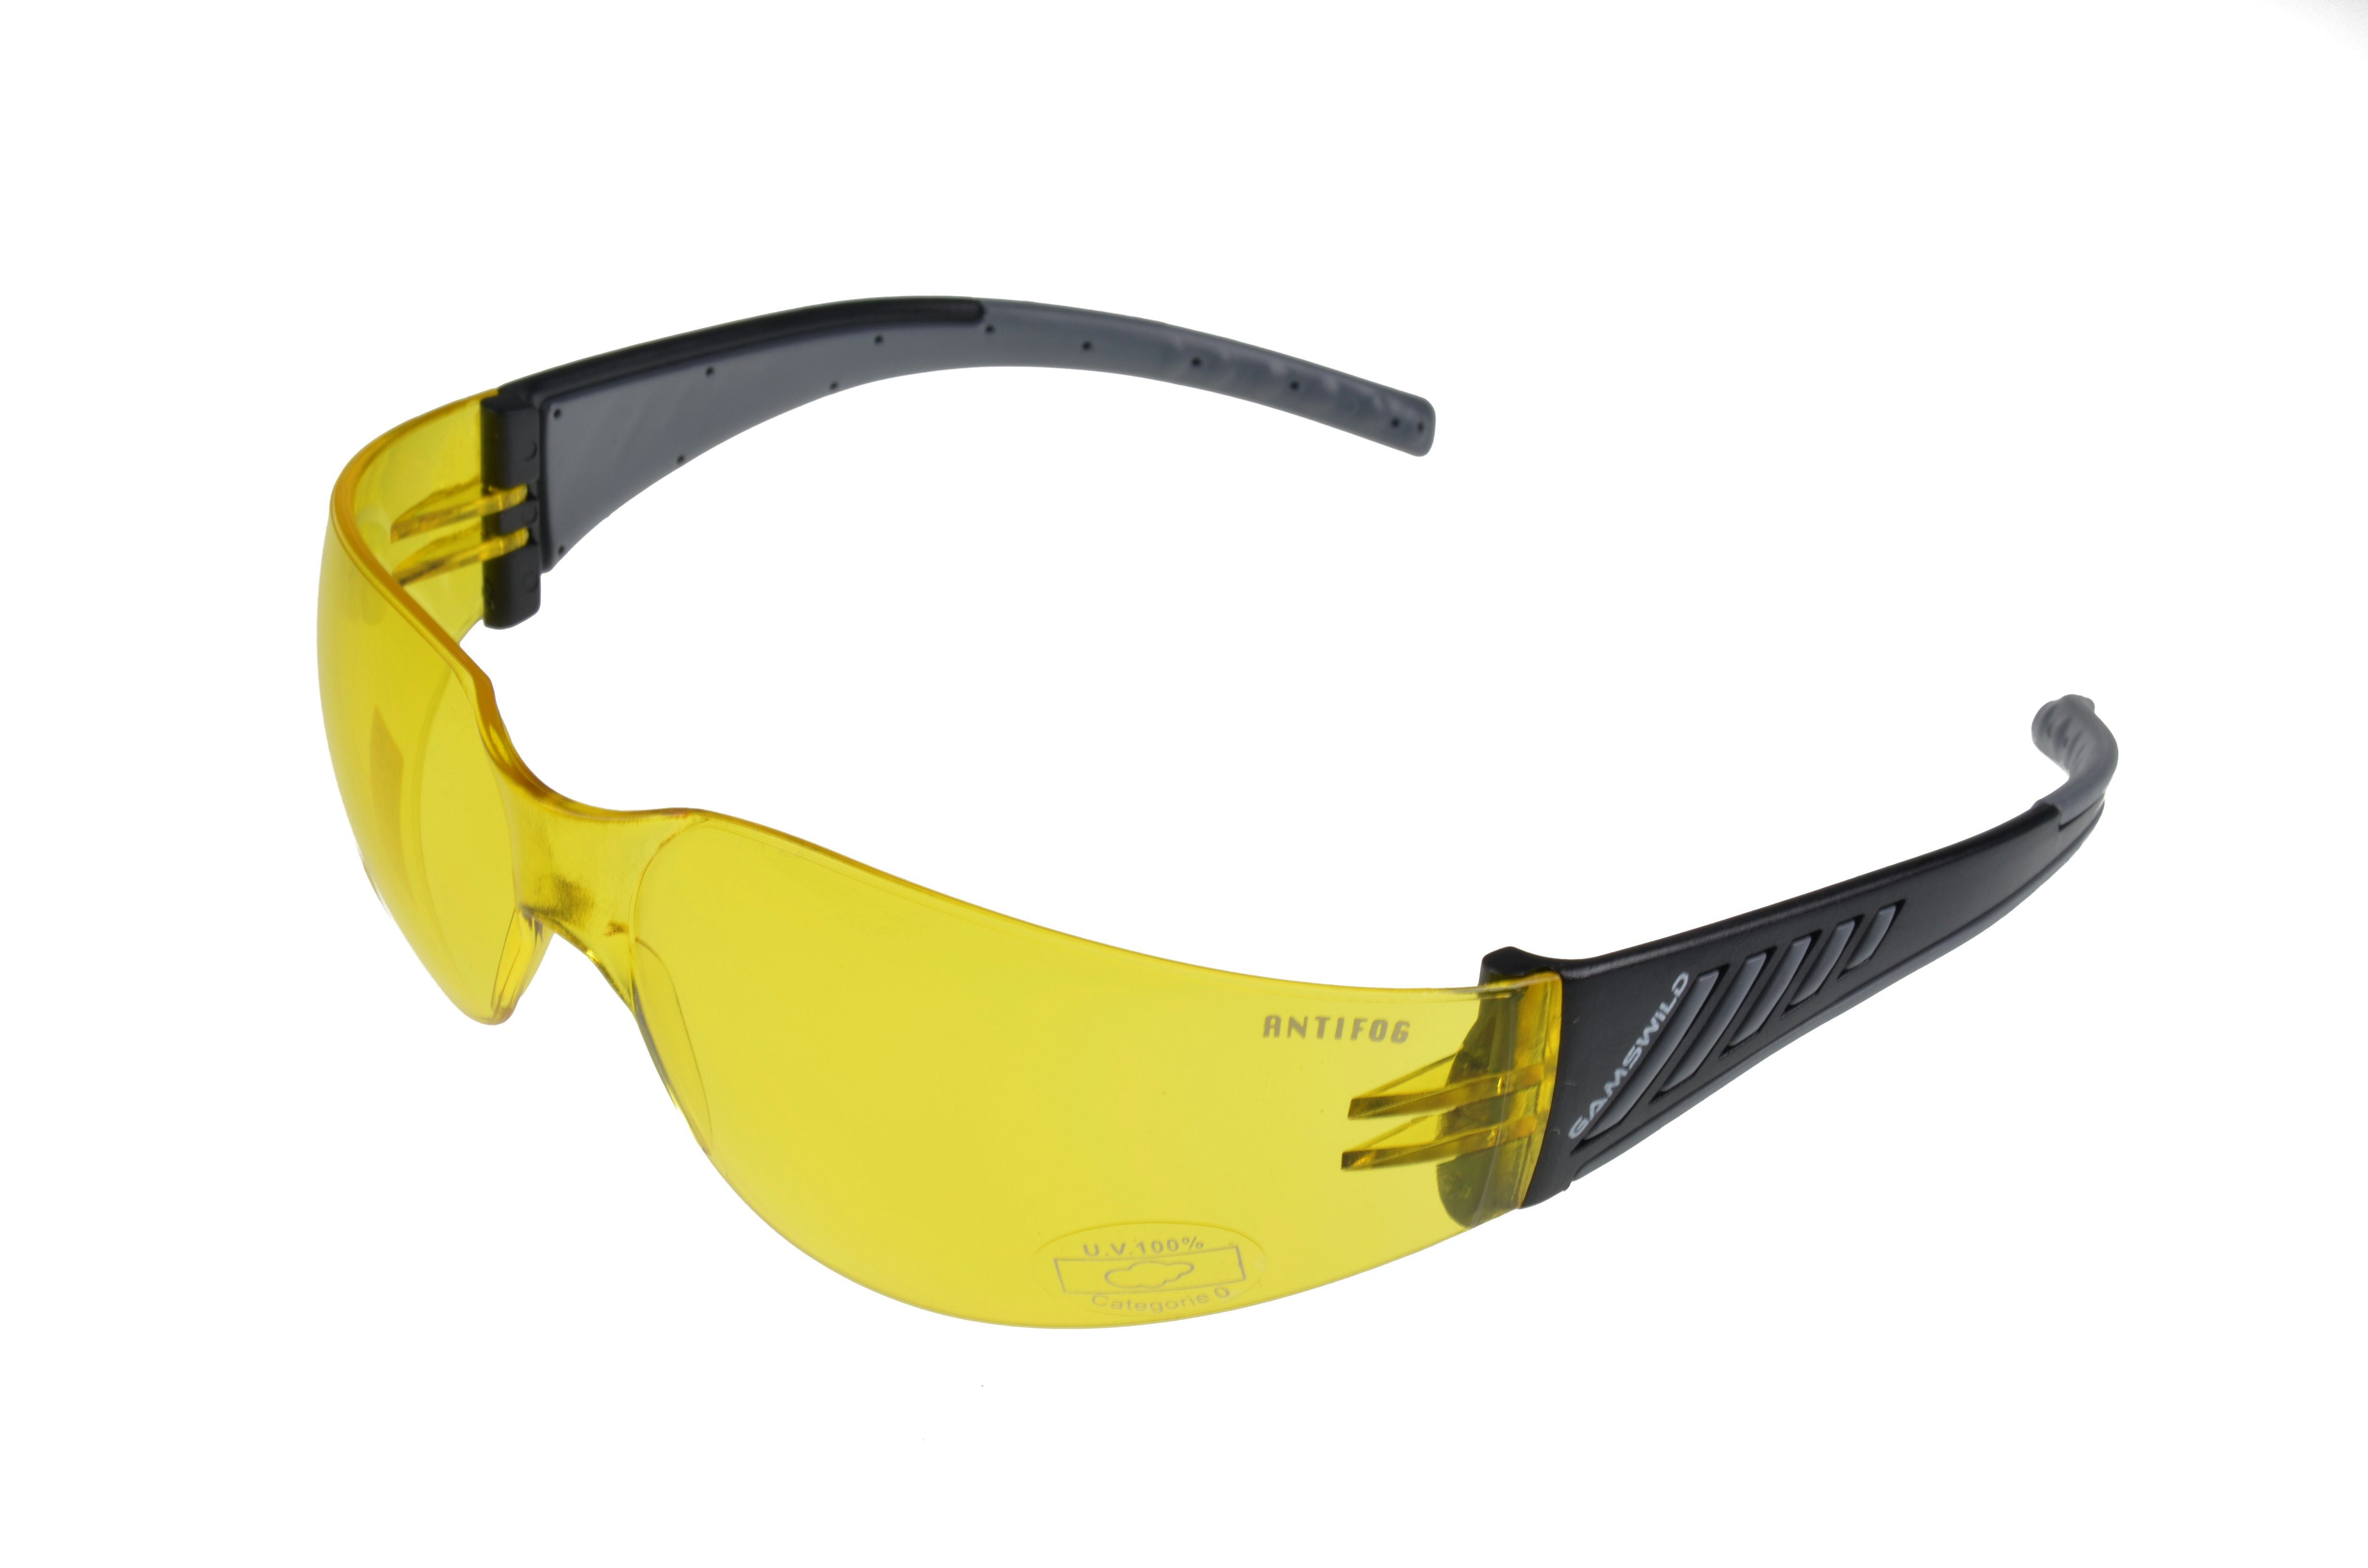 Gamswild Sportbrille brau, Fahrradbrille Sonnenbrille Skibrille Herren Unisex, grau, Damen gelb WS7122 ANTIFOG orange